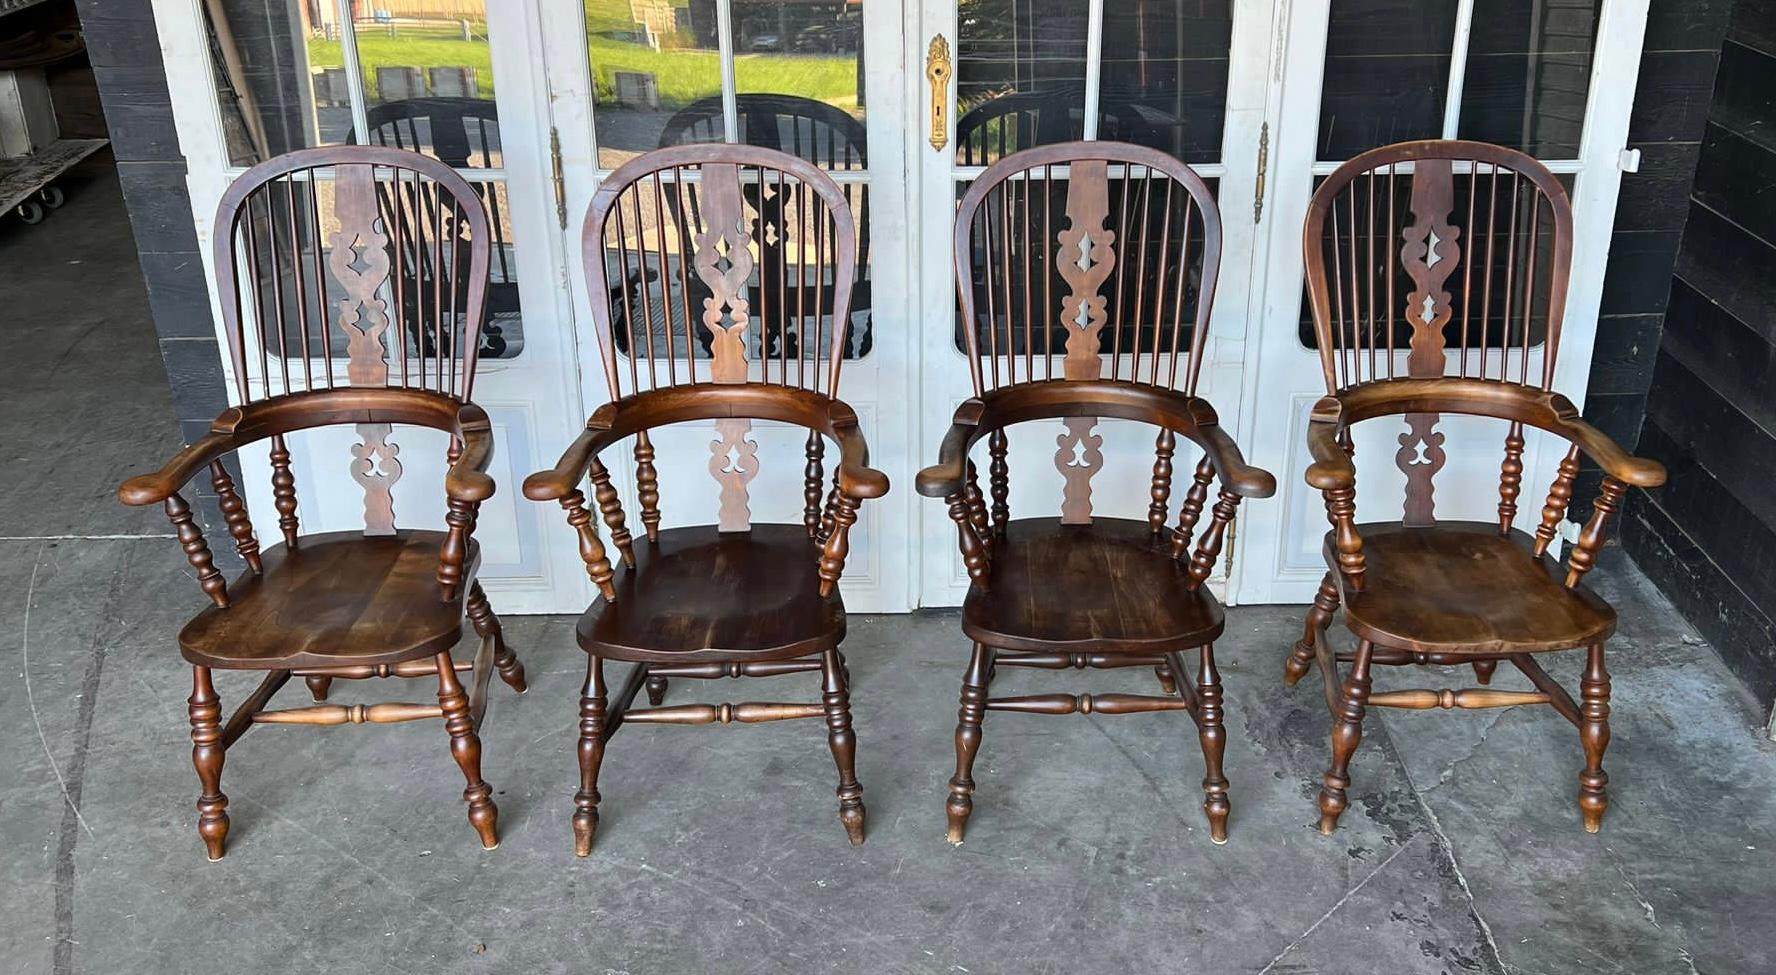 Ein reizvolles Harlekin-Set mit 4 breiten Sesseln aus dem frühen 19. Jahrhundert. Diese Stühle werden aus verschiedenen Hölzern hergestellt, darunter Esche und Ulme. Sie sind stark und robust und in ausgezeichnetem Originalzustand. Diese Stühle sind